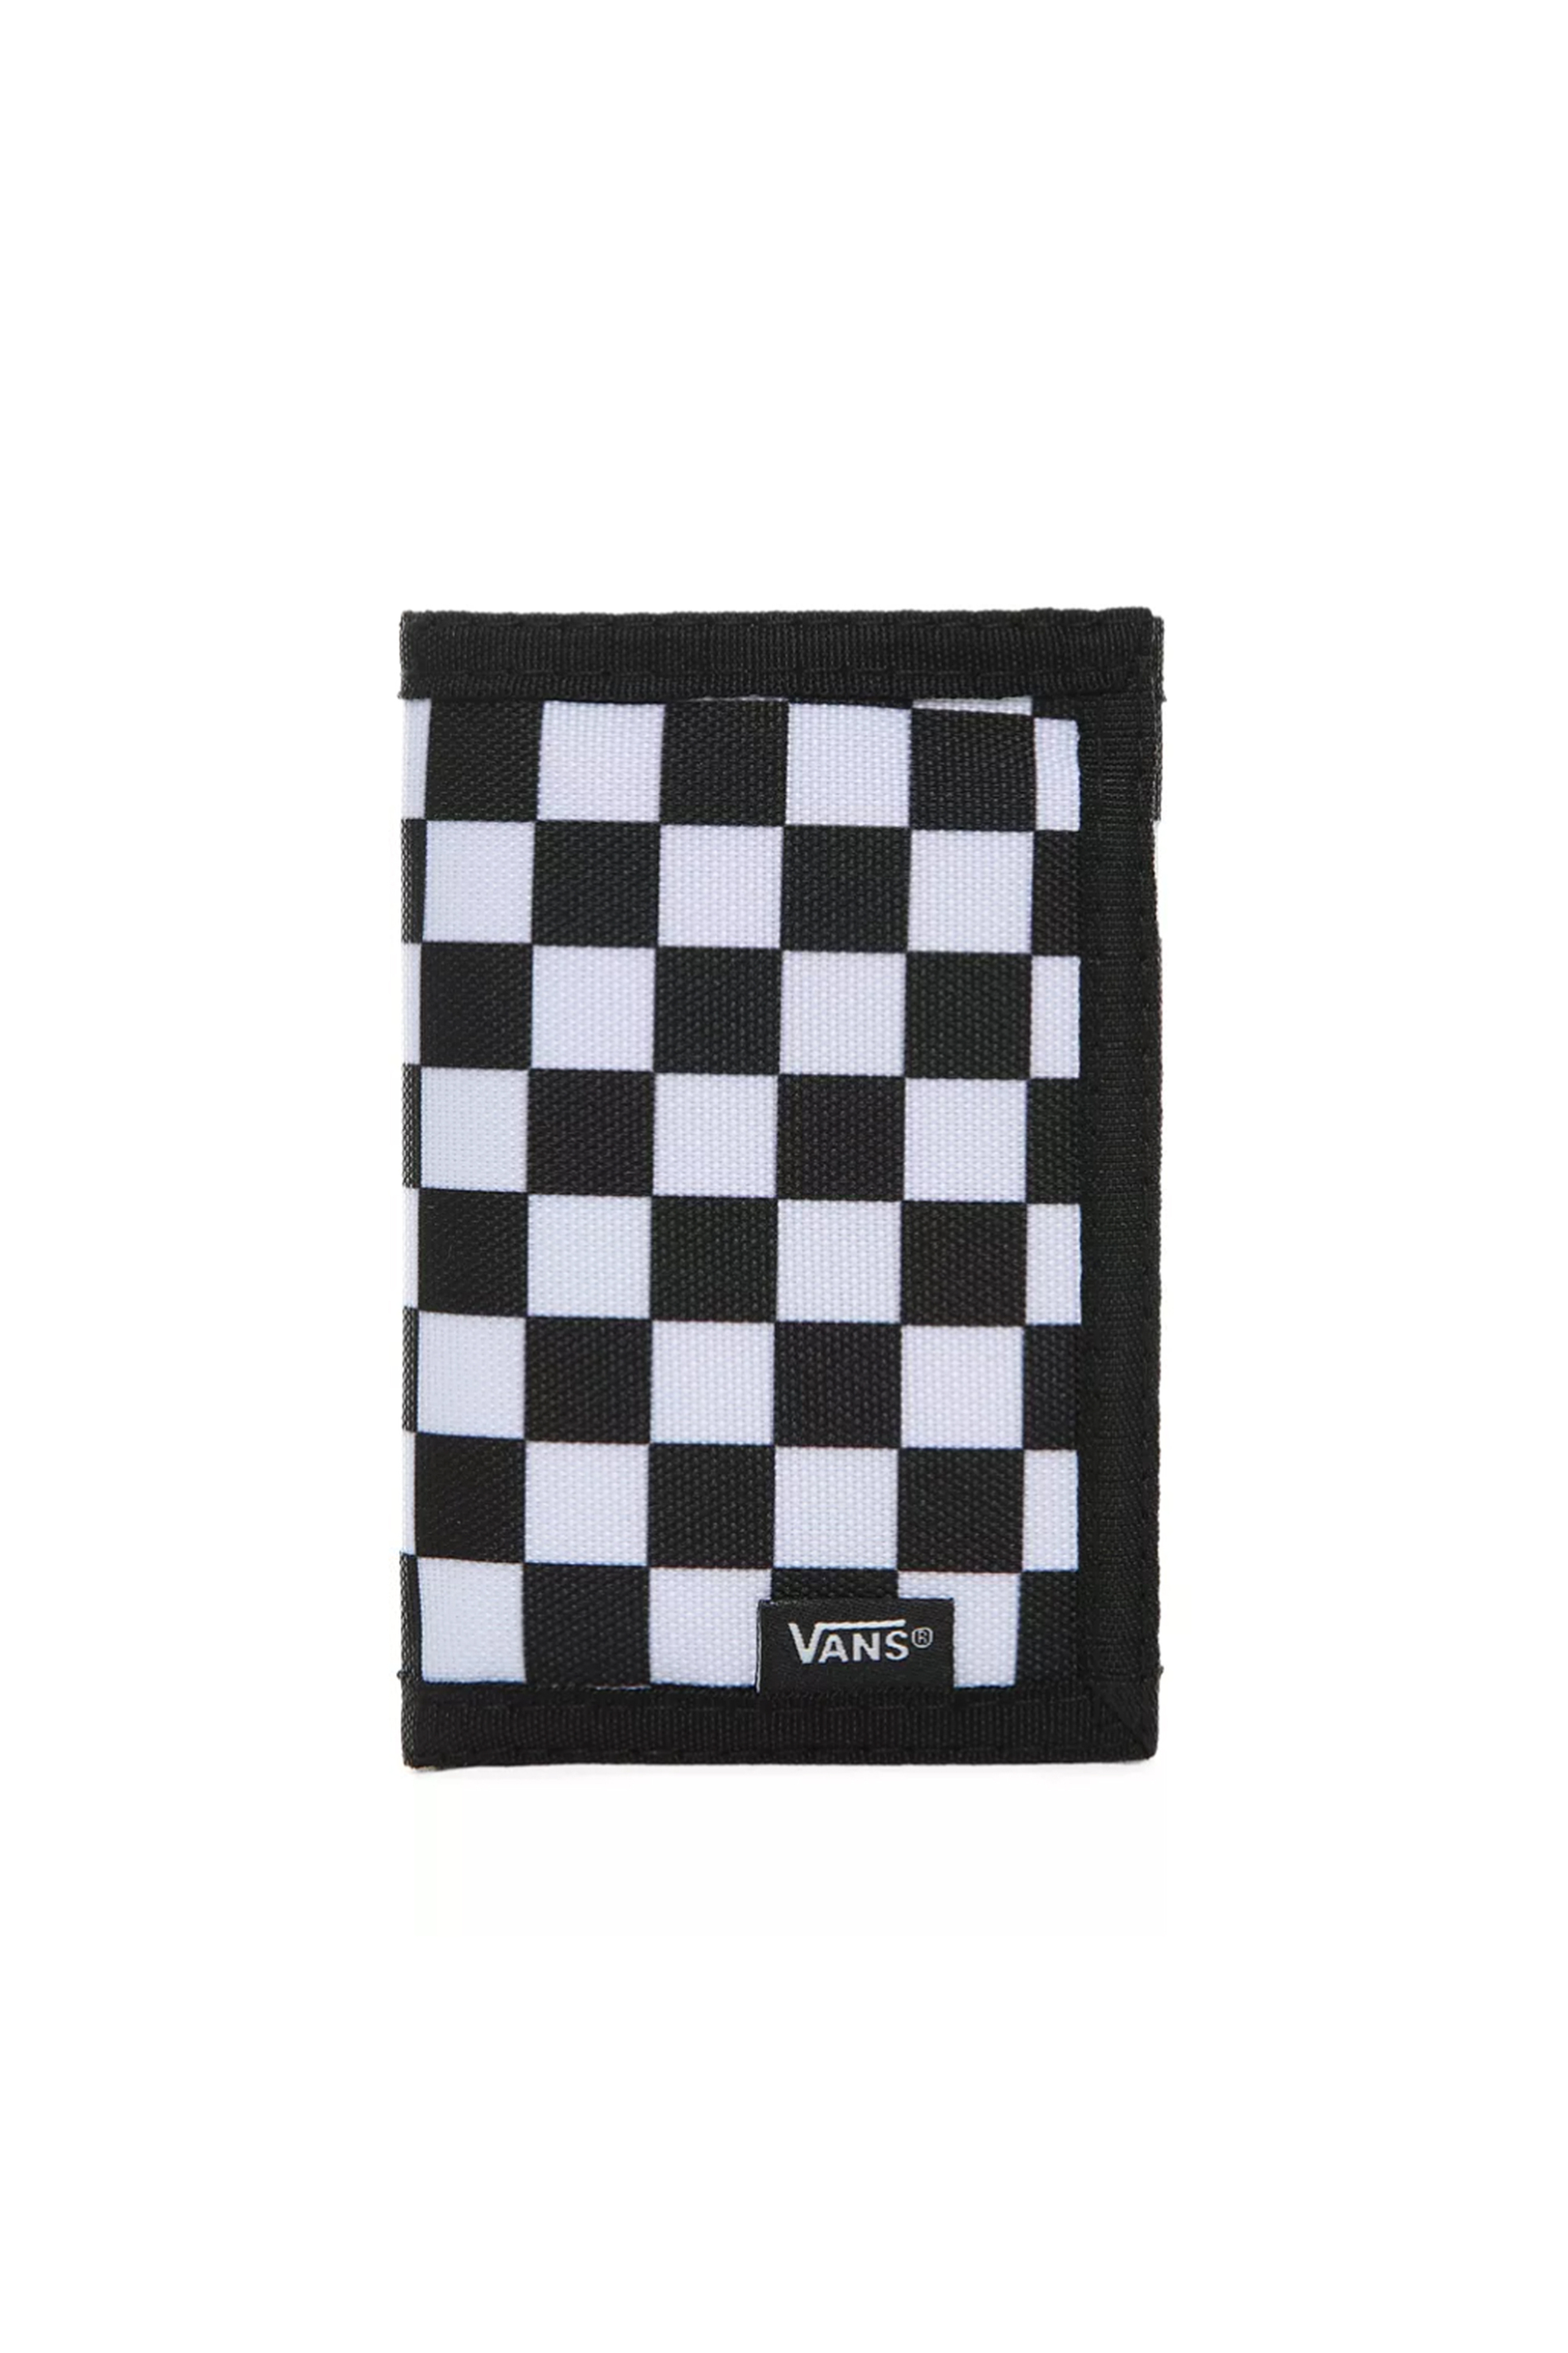 Ανδρική Μόδα > Ανδρικά Αξεσουάρ > Ανδρικά Πορτοφόλια & Θήκες Vans unisex πορτοφόλι με all-over checkerboard print "Slipped" - VN000C32HU01 Μαύρο